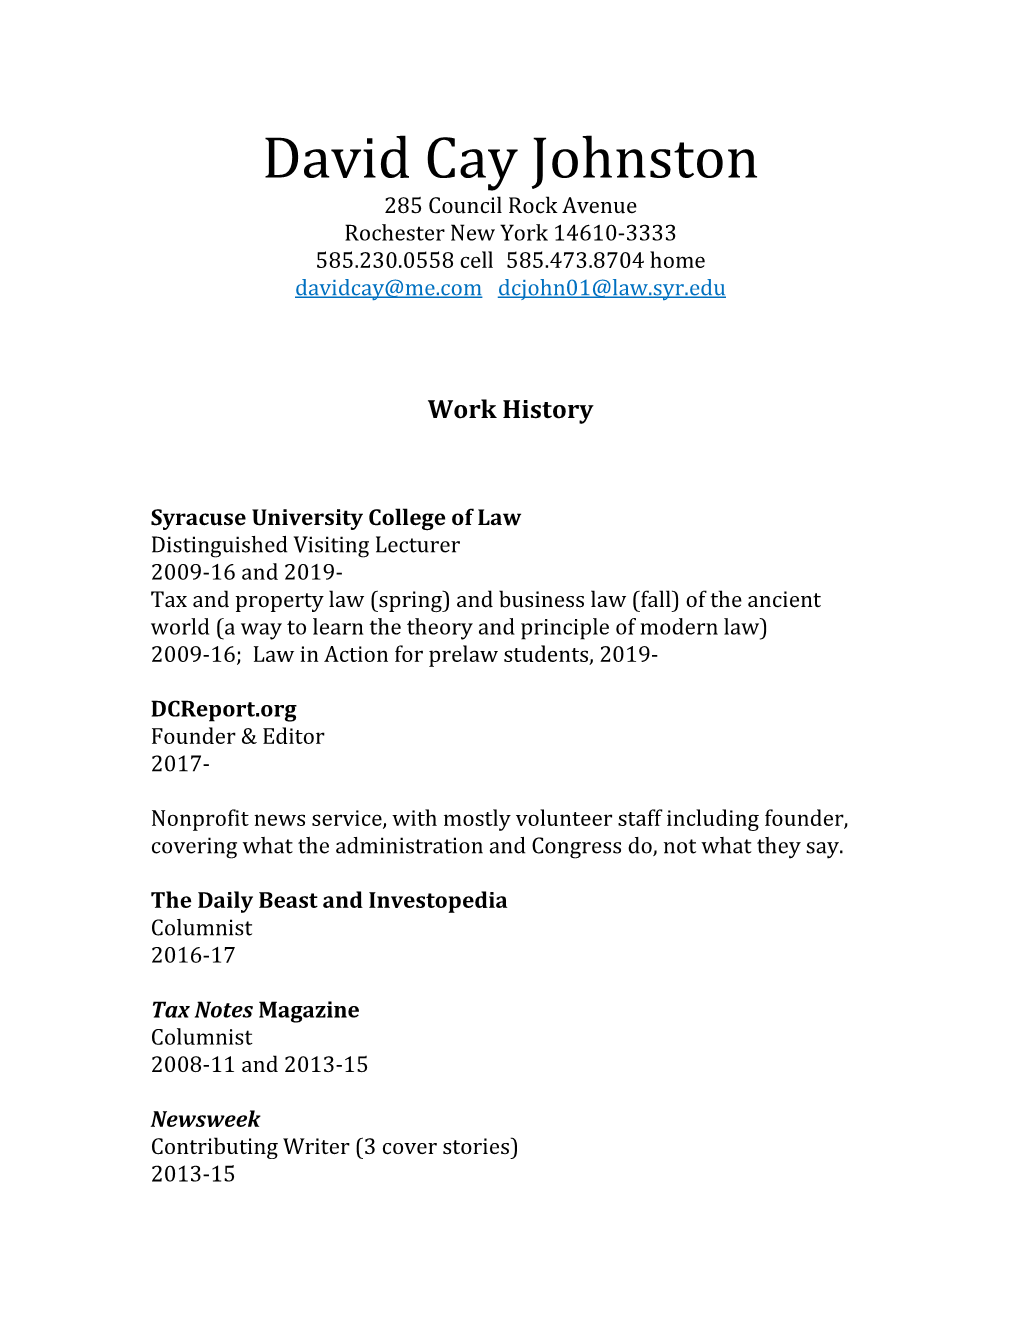 Cay Johnston CV